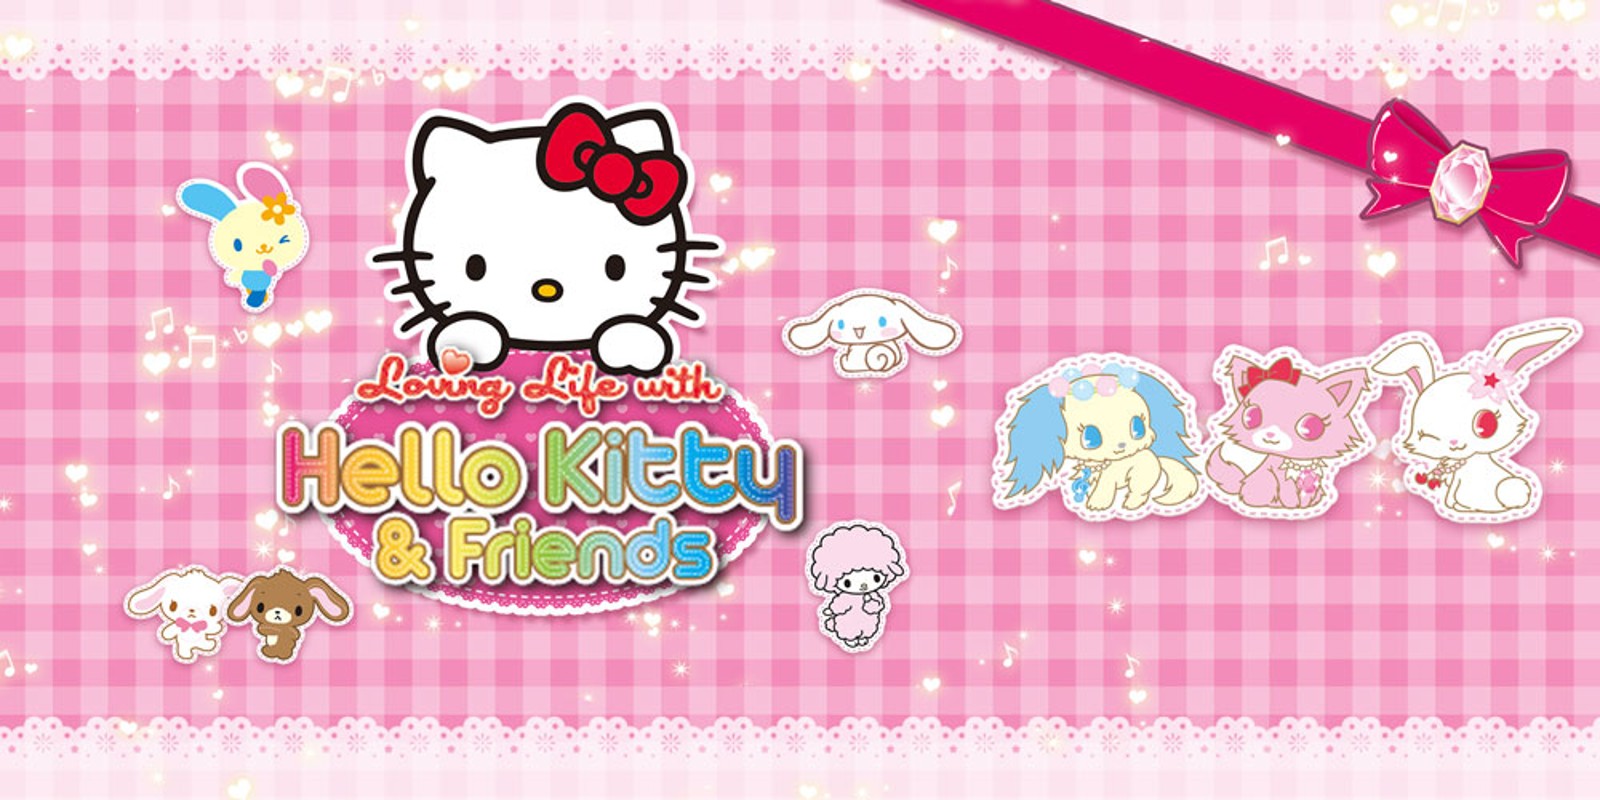 🎲 Jogo 2 em 1, você pode jogar o jogo da memória com a Hello Kitty e seus  amigos ou pode jogar um detetive. 🕵🏼Ficou curioso pra saber como joga  o